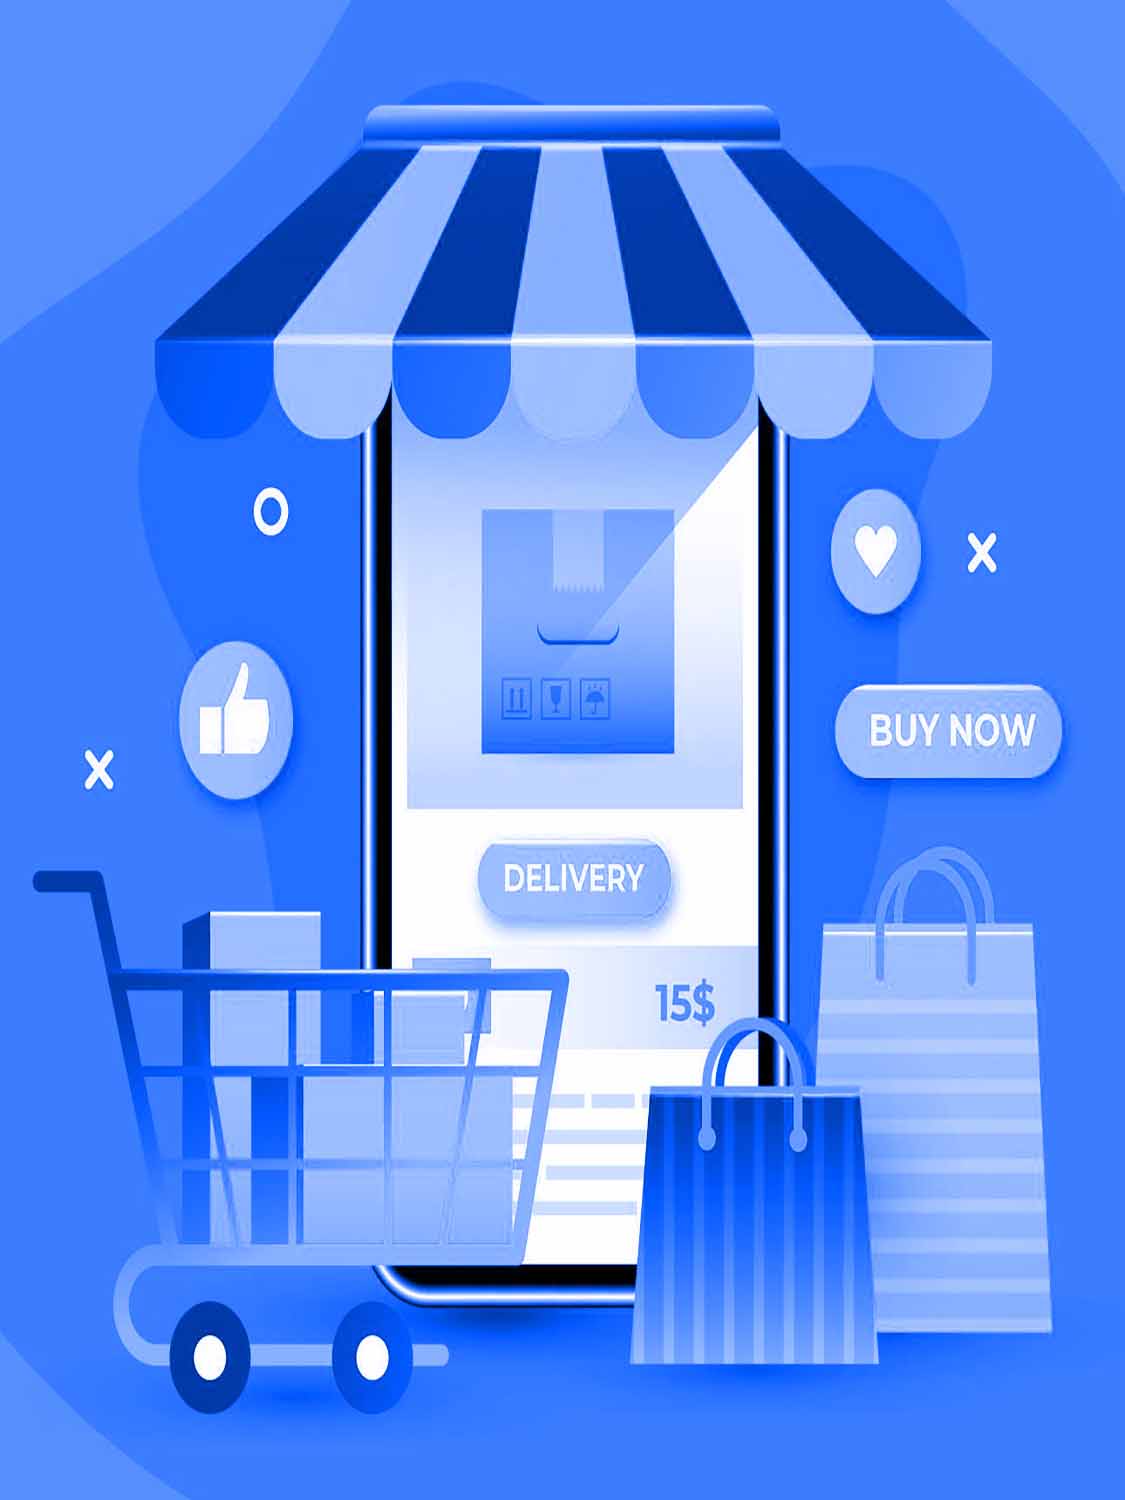 3d illustration of a digital online shop